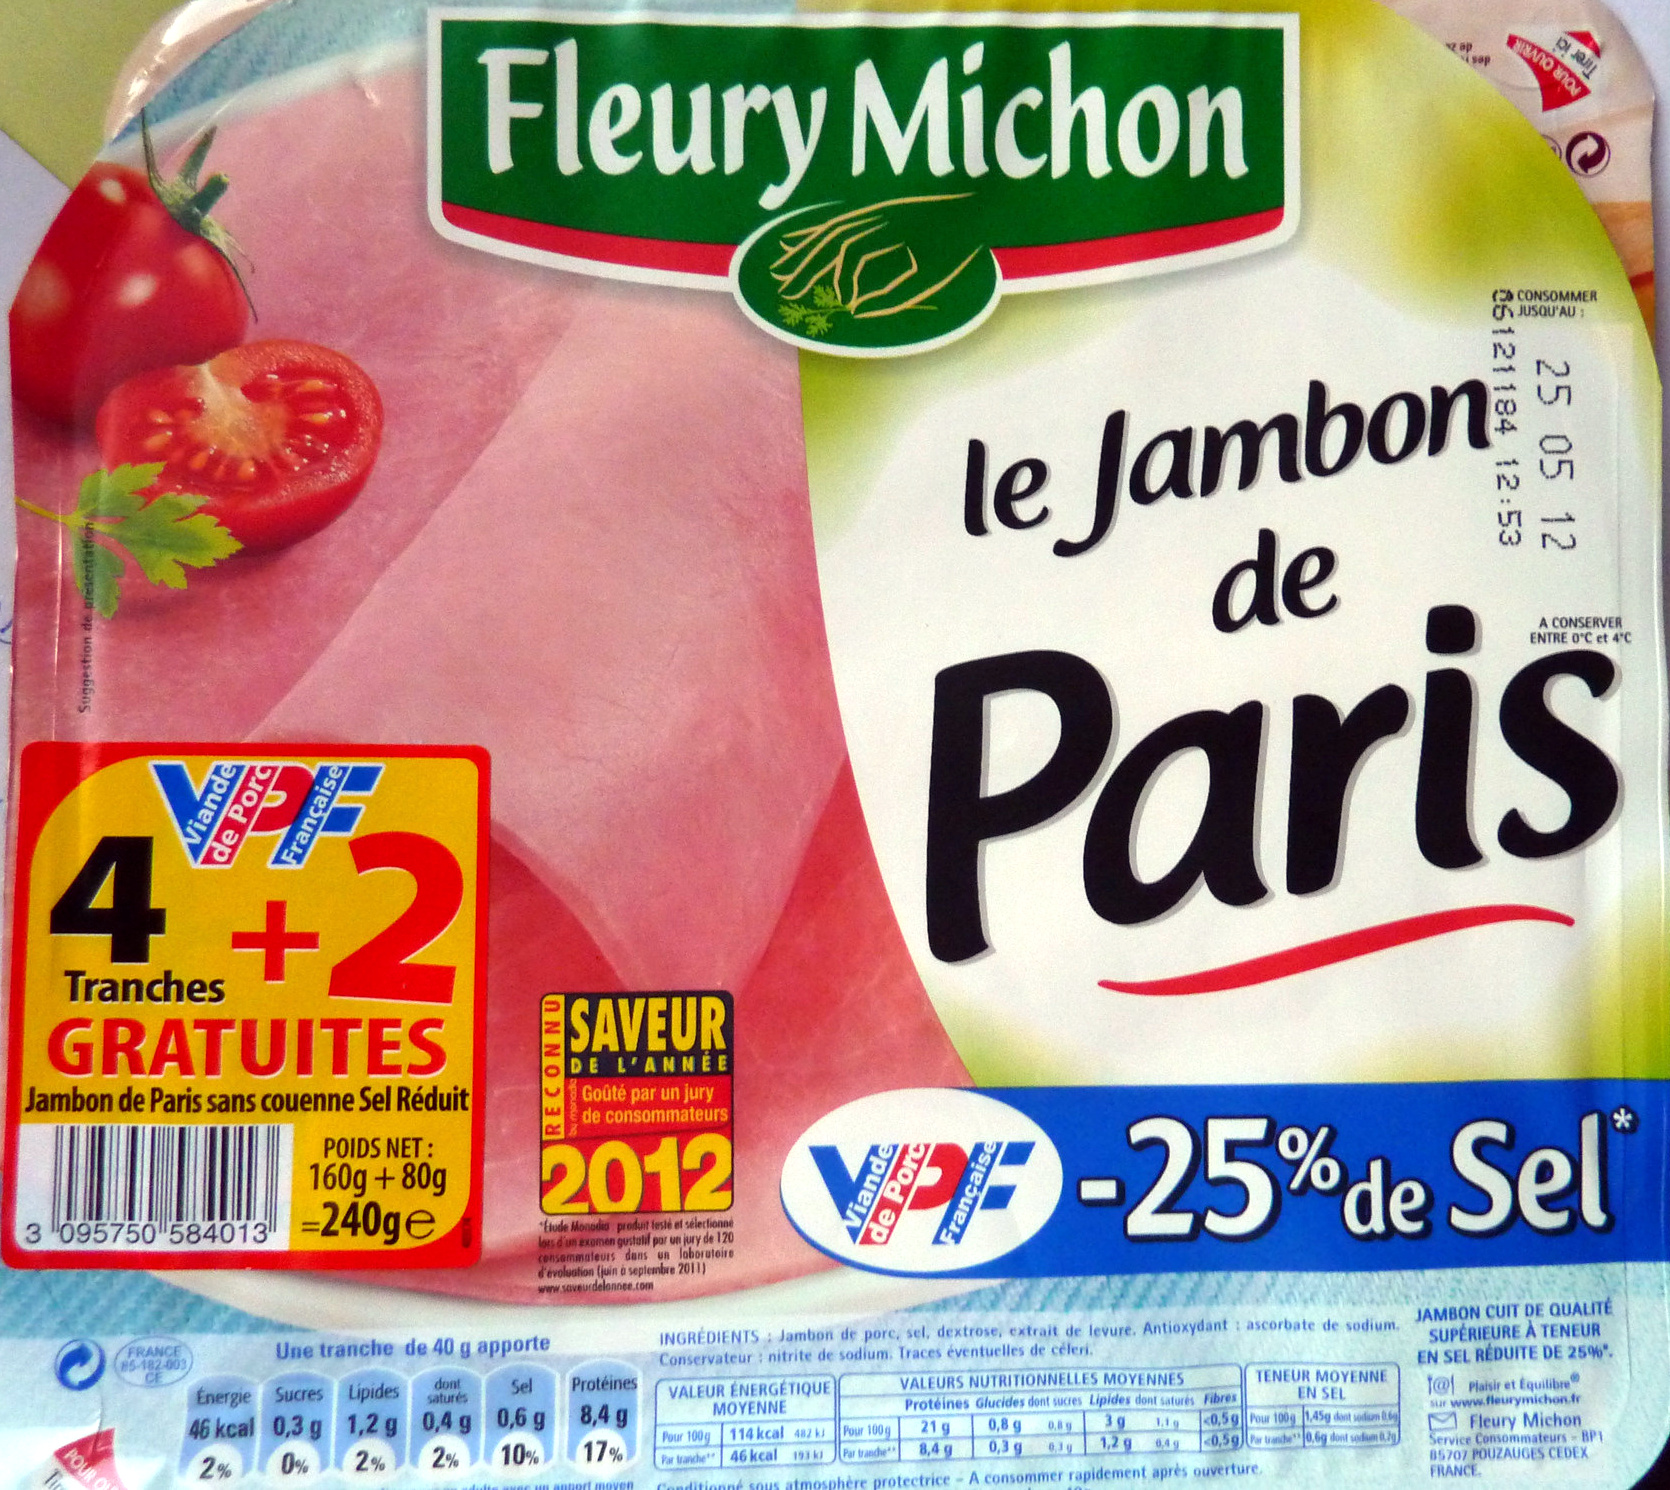 Le Jambon de Paris (- 25 % de Sel) 4 Tranches + 2 Gratuites - Producto - fr